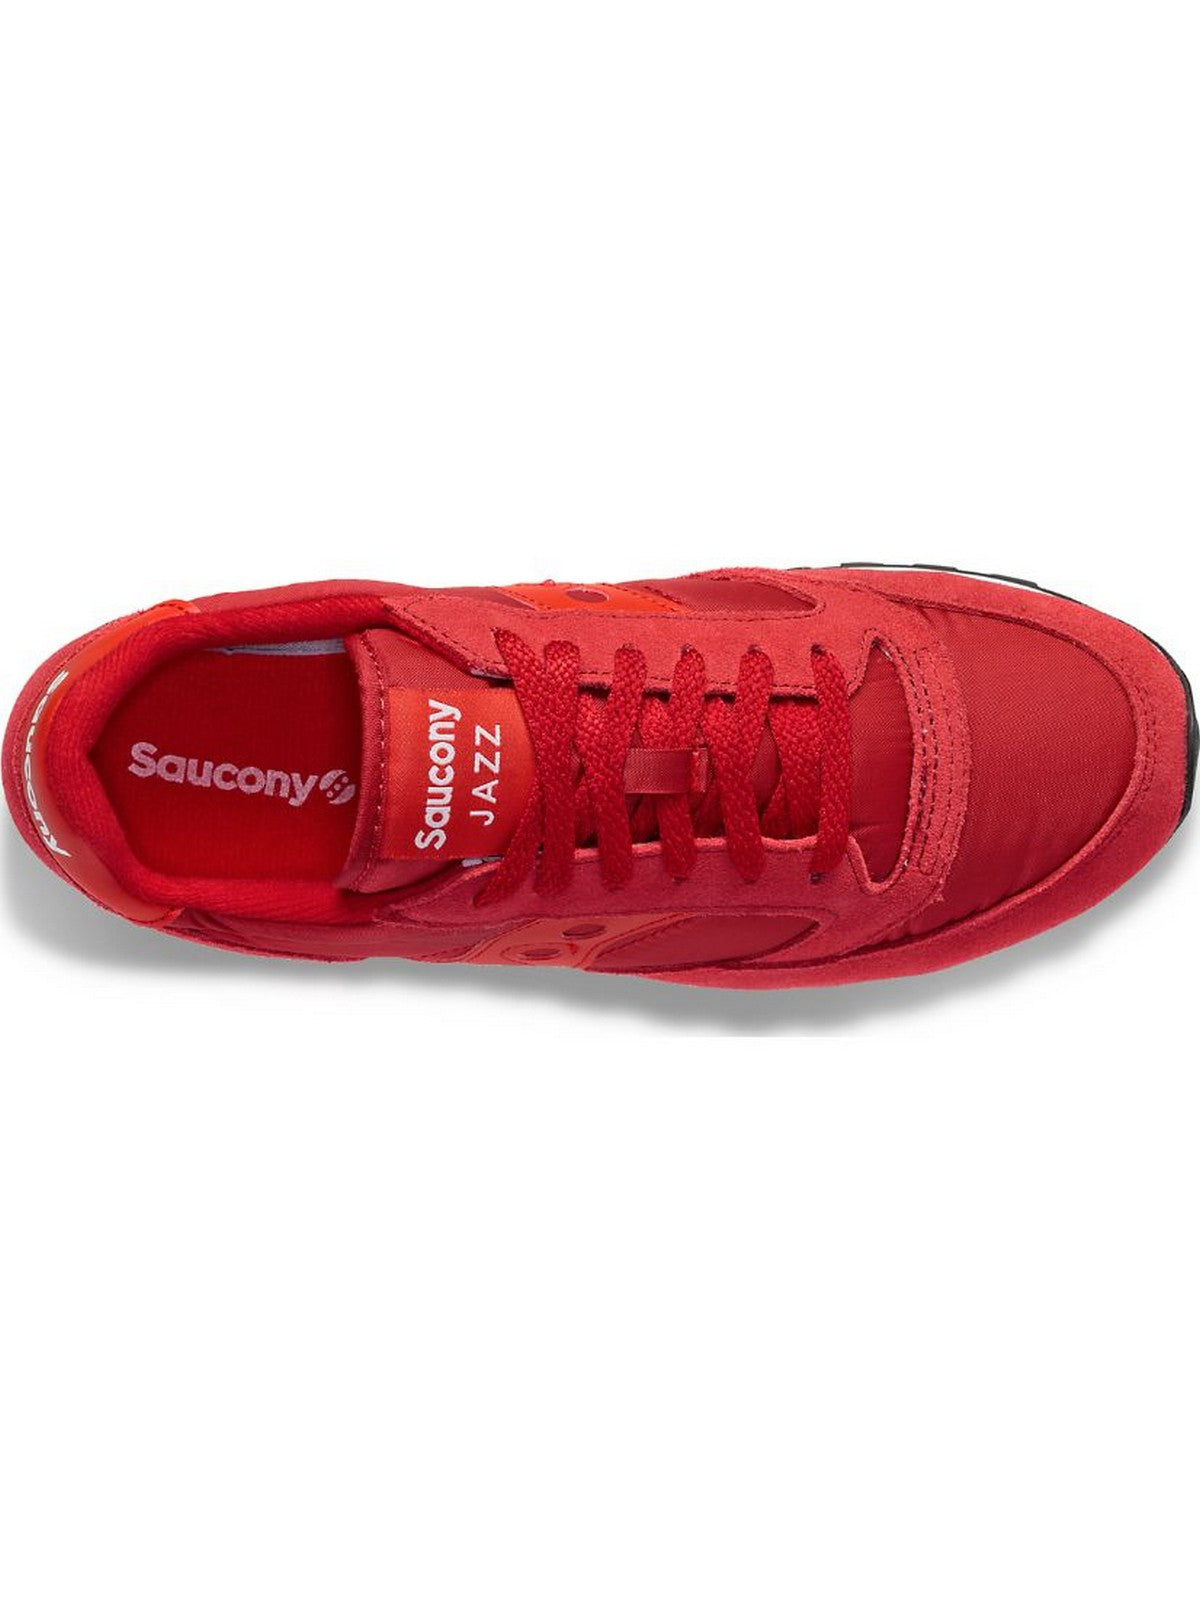 SAUCONY Sneaker Uomo Jazz original S2044-657 Rosso